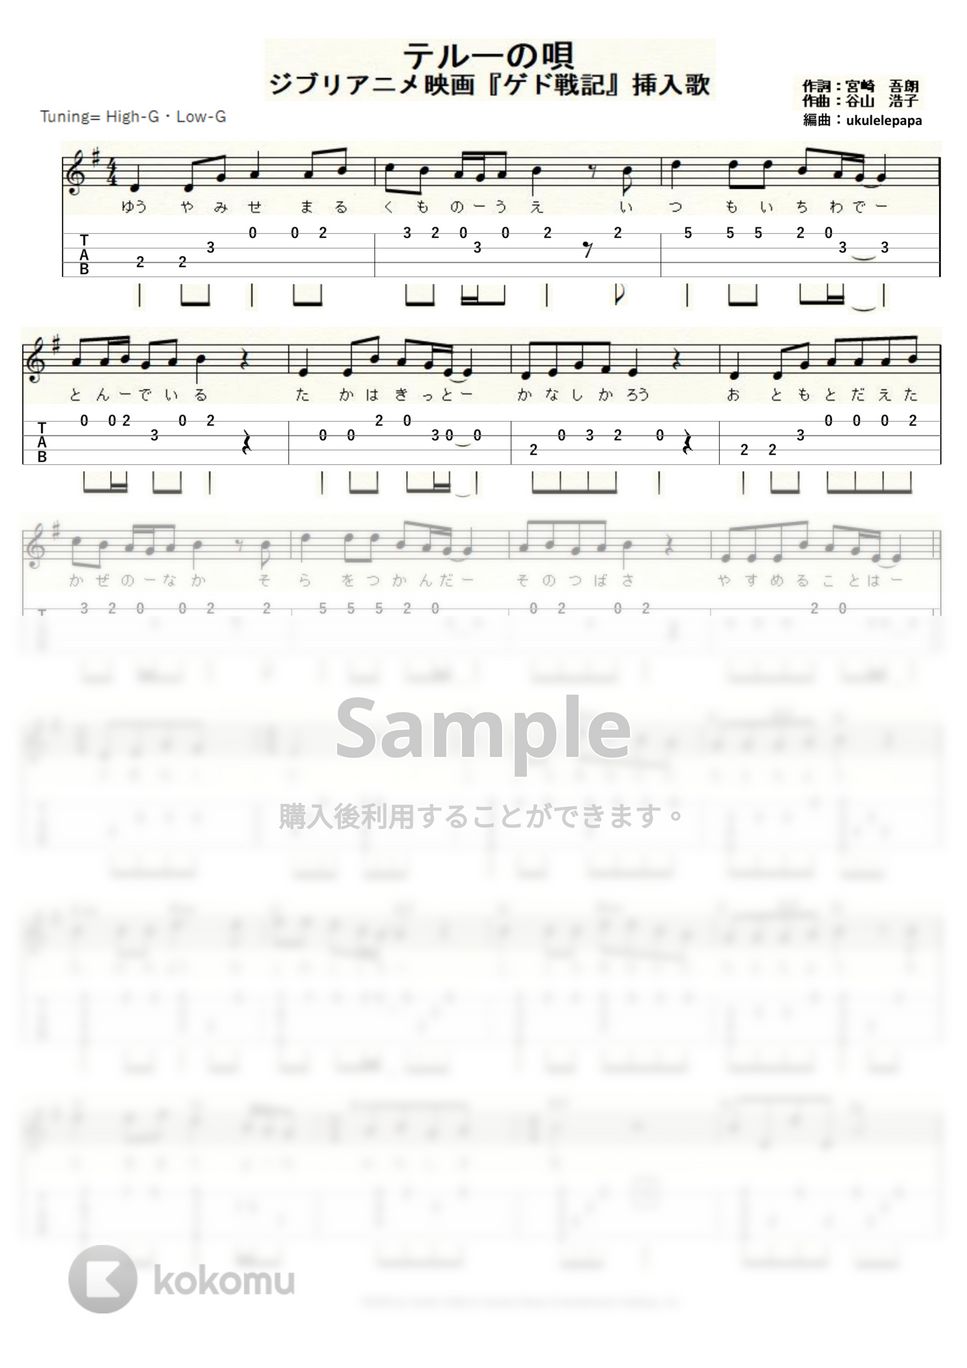 手嶌 葵 - テルーの唄 (ｳｸﾚﾚｿﾛ/High-G・Low-G/中級) by ukulelepapa